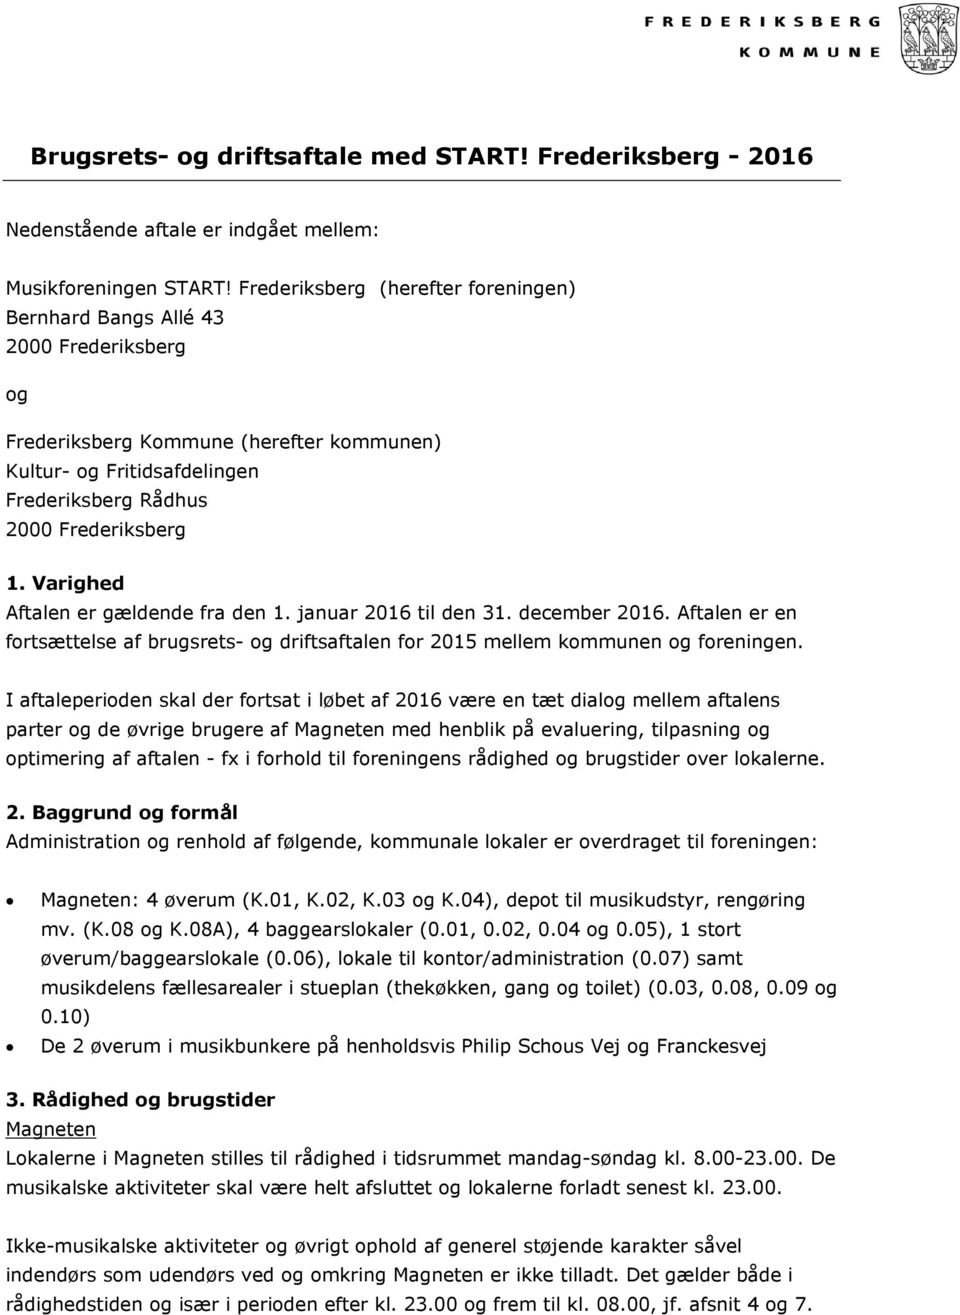 Brugsrets- og driftsaftale med START! Frederiksberg - PDF Gratis download